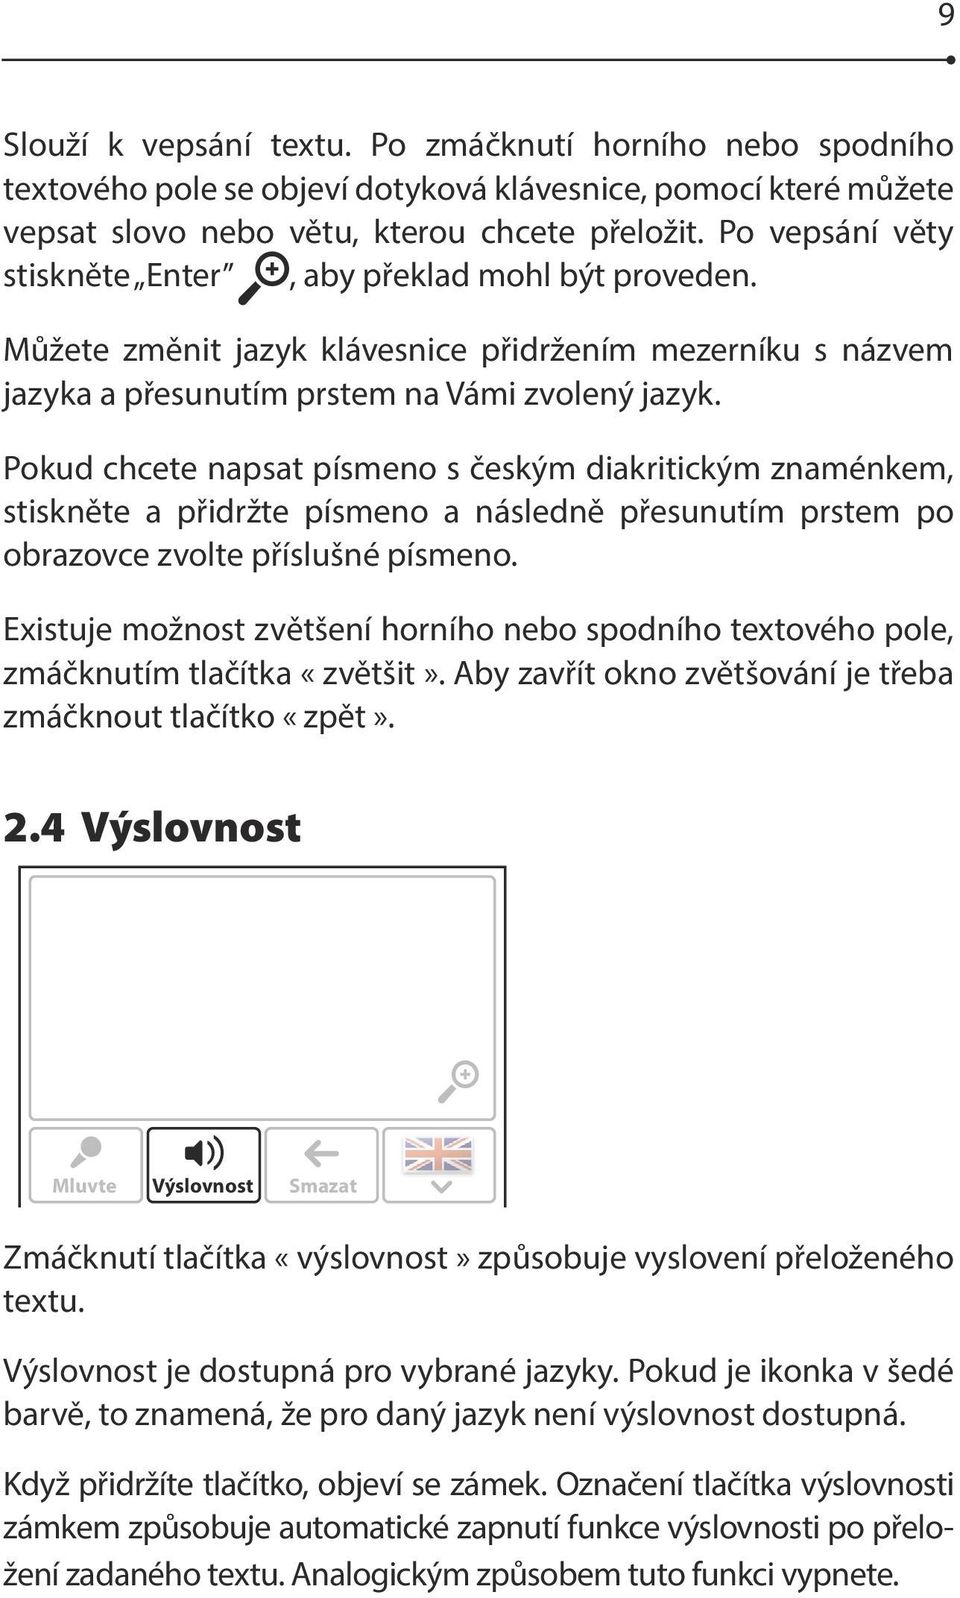 Pokud chcete napsat písmeno s českým diakritickým znaménkem, stiskněte a přidržte písmeno a následně přesunutím prstem po obrazovce zvolte příslušné písmeno.